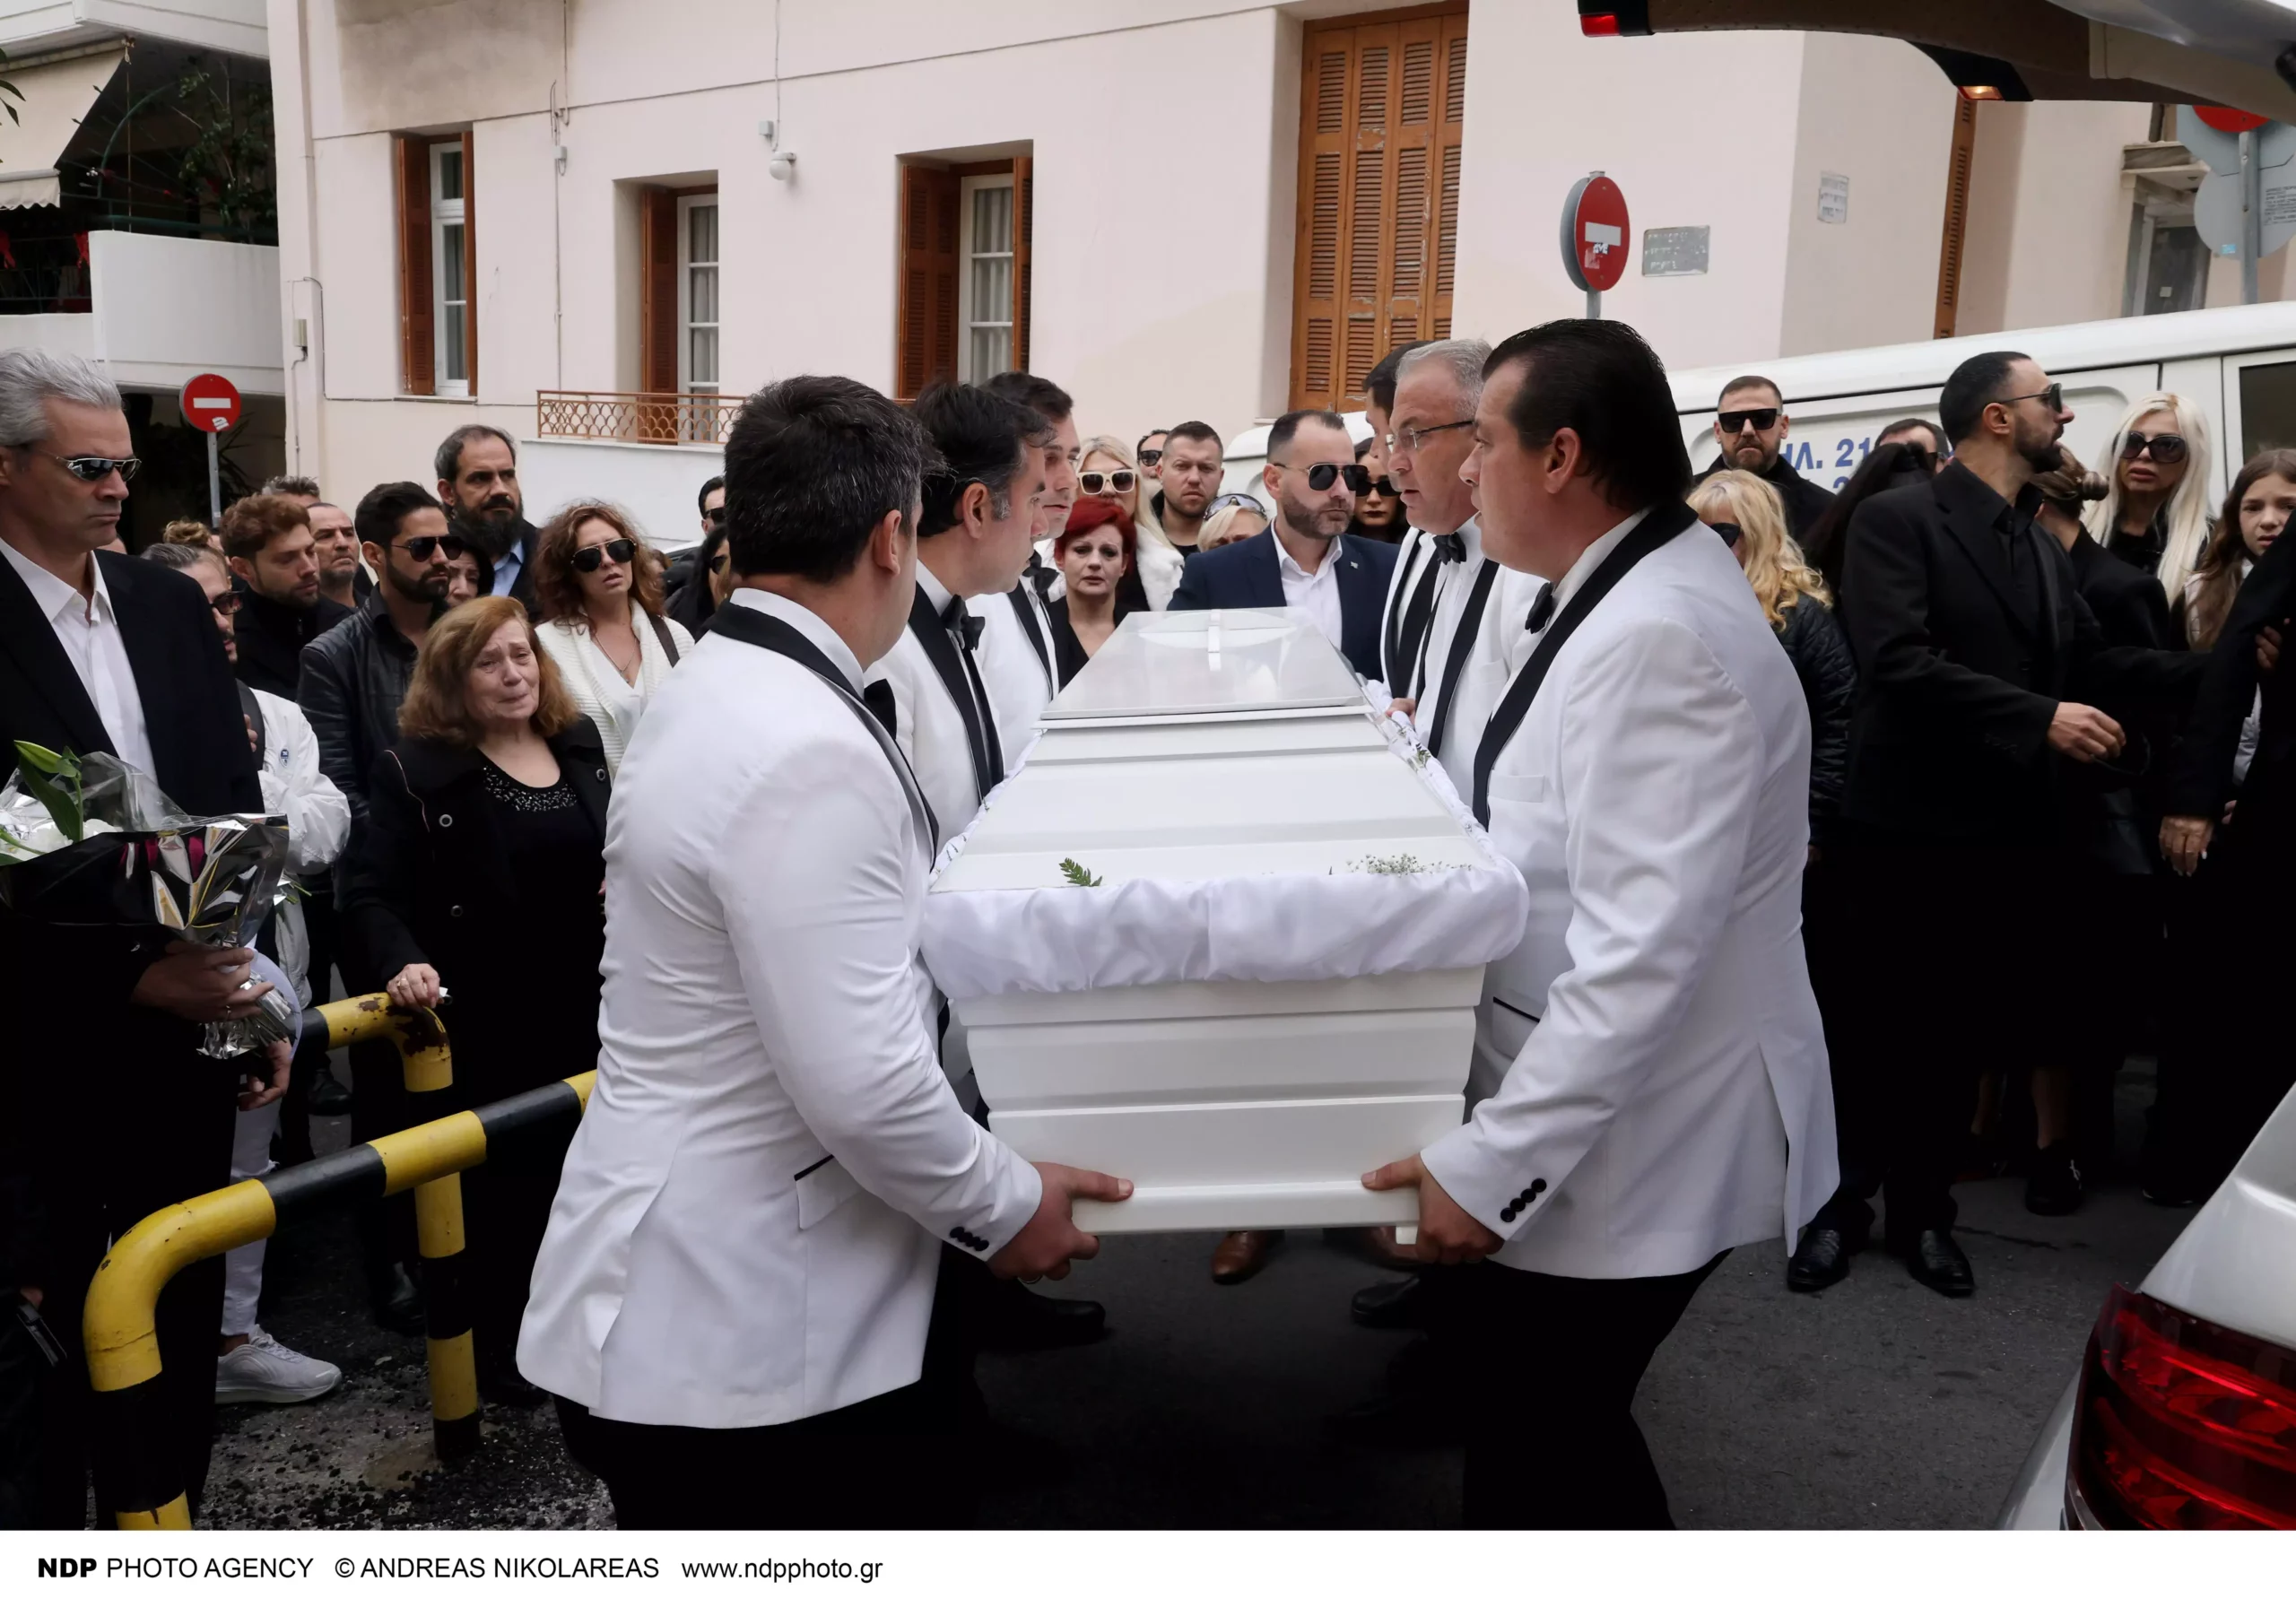 Κηδεία Νίκου Φλωρινιώτη: Υποβασταζόμενες η Μάχη και η Αννούλα Φλωρινιώτη